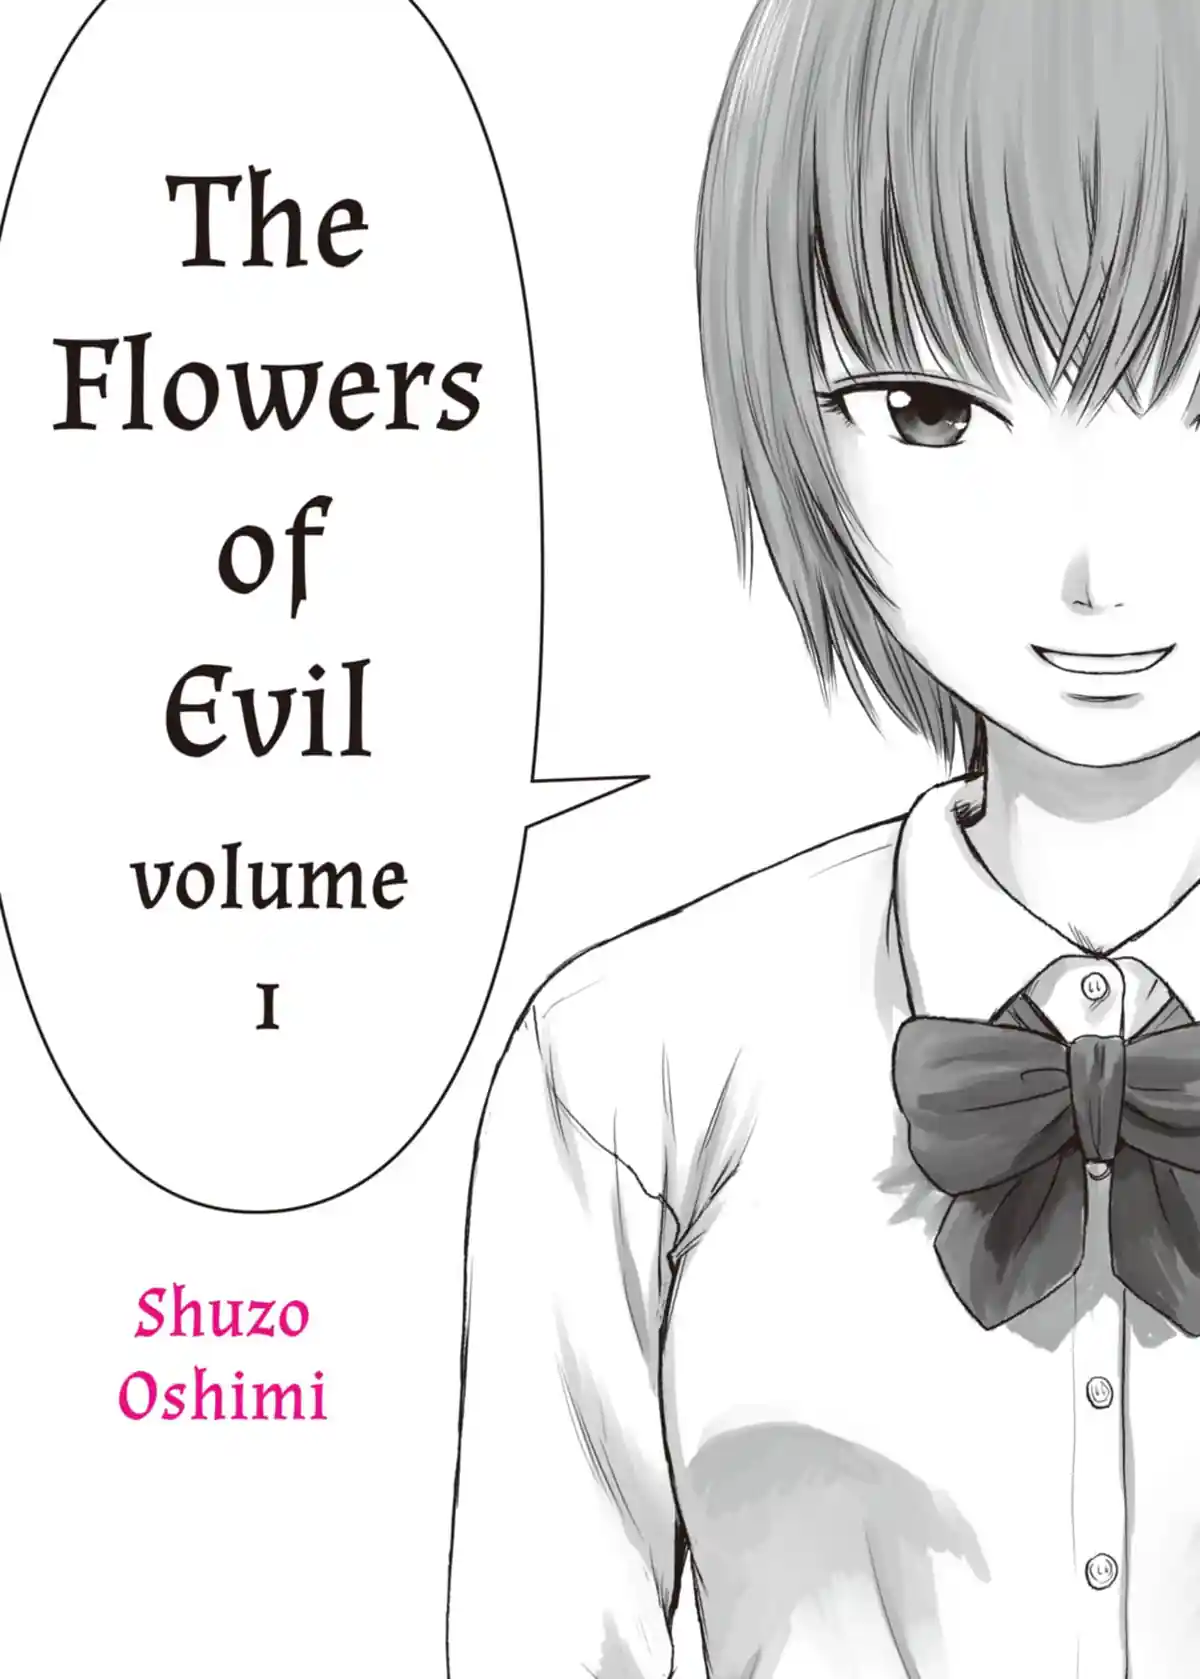 Flowers of evil manga read